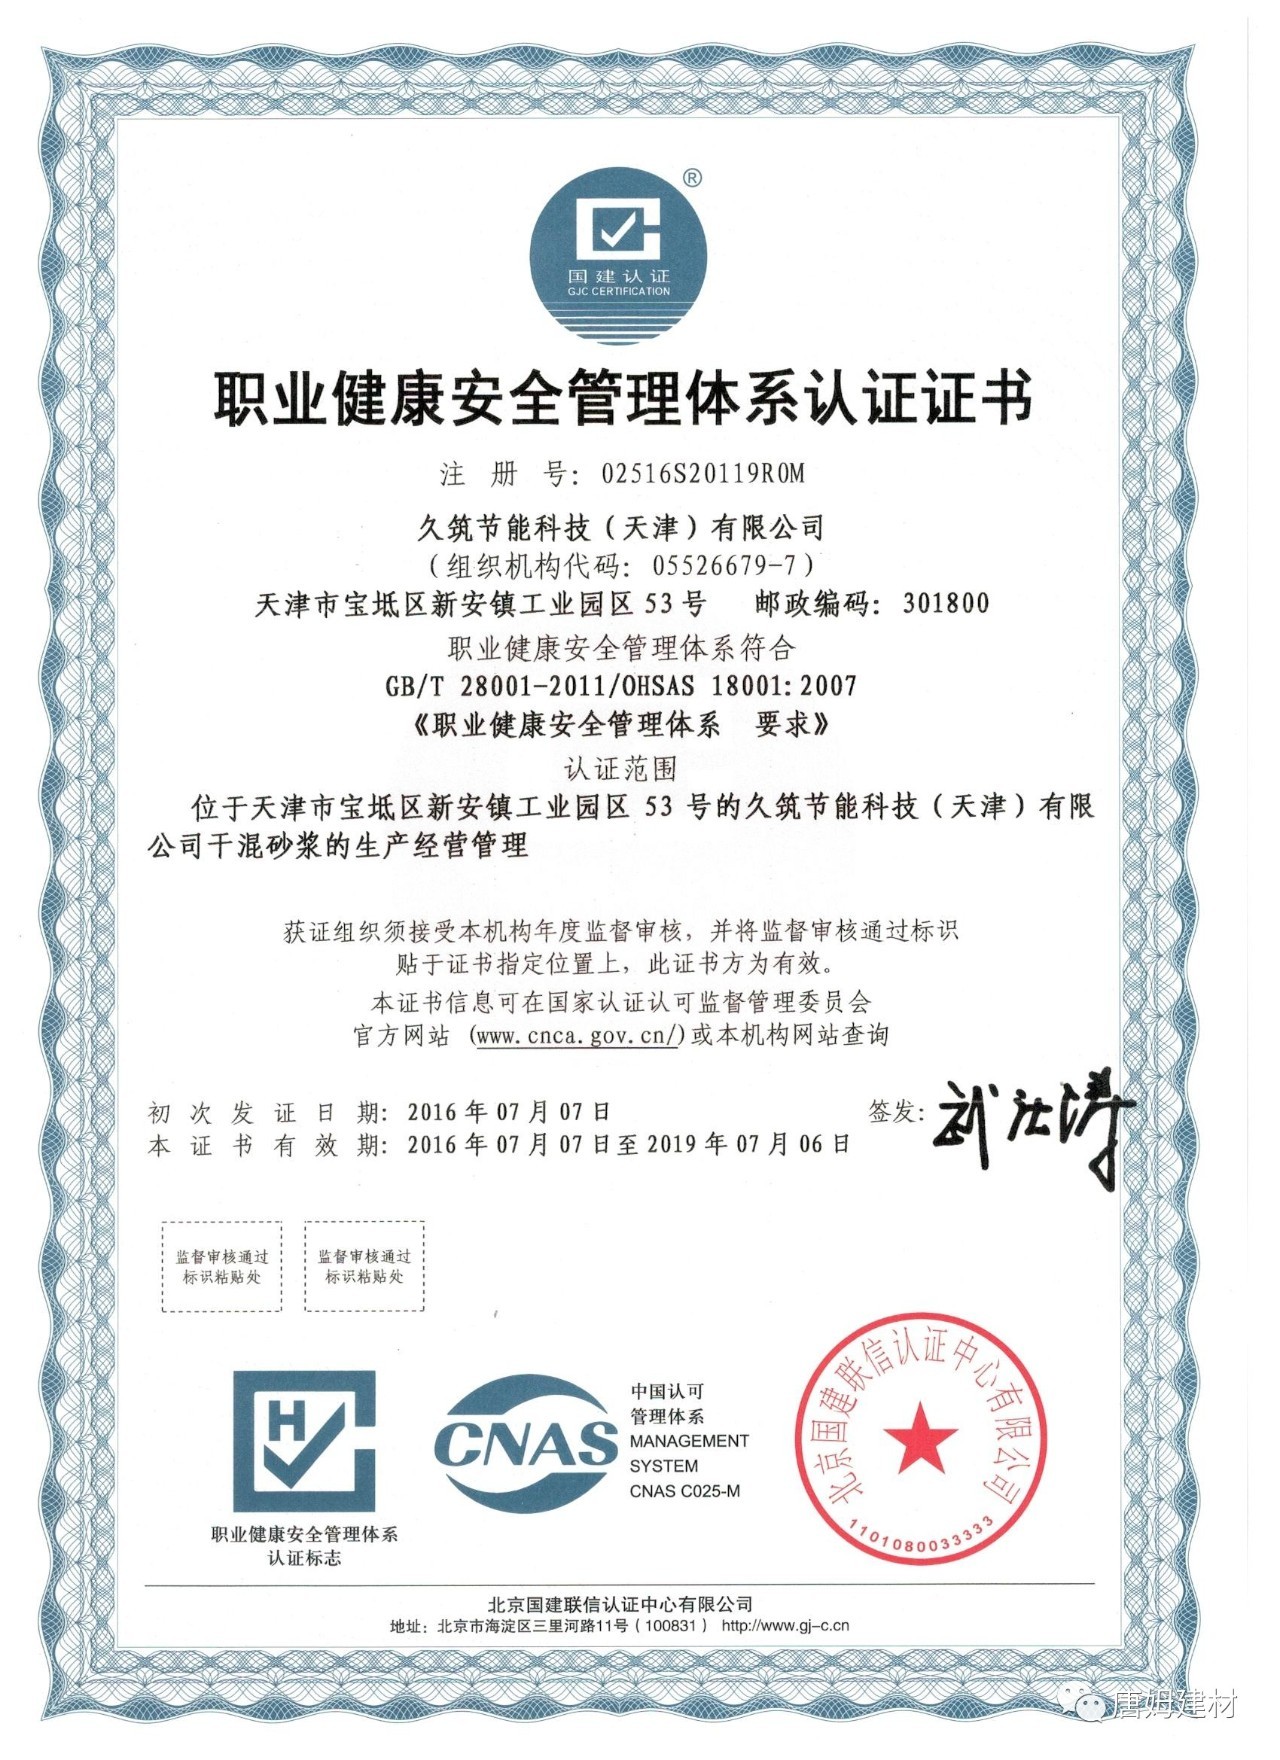 职业健康与安全管理体系填缝剂产品认证证书代表我公司所生产的填缝剂